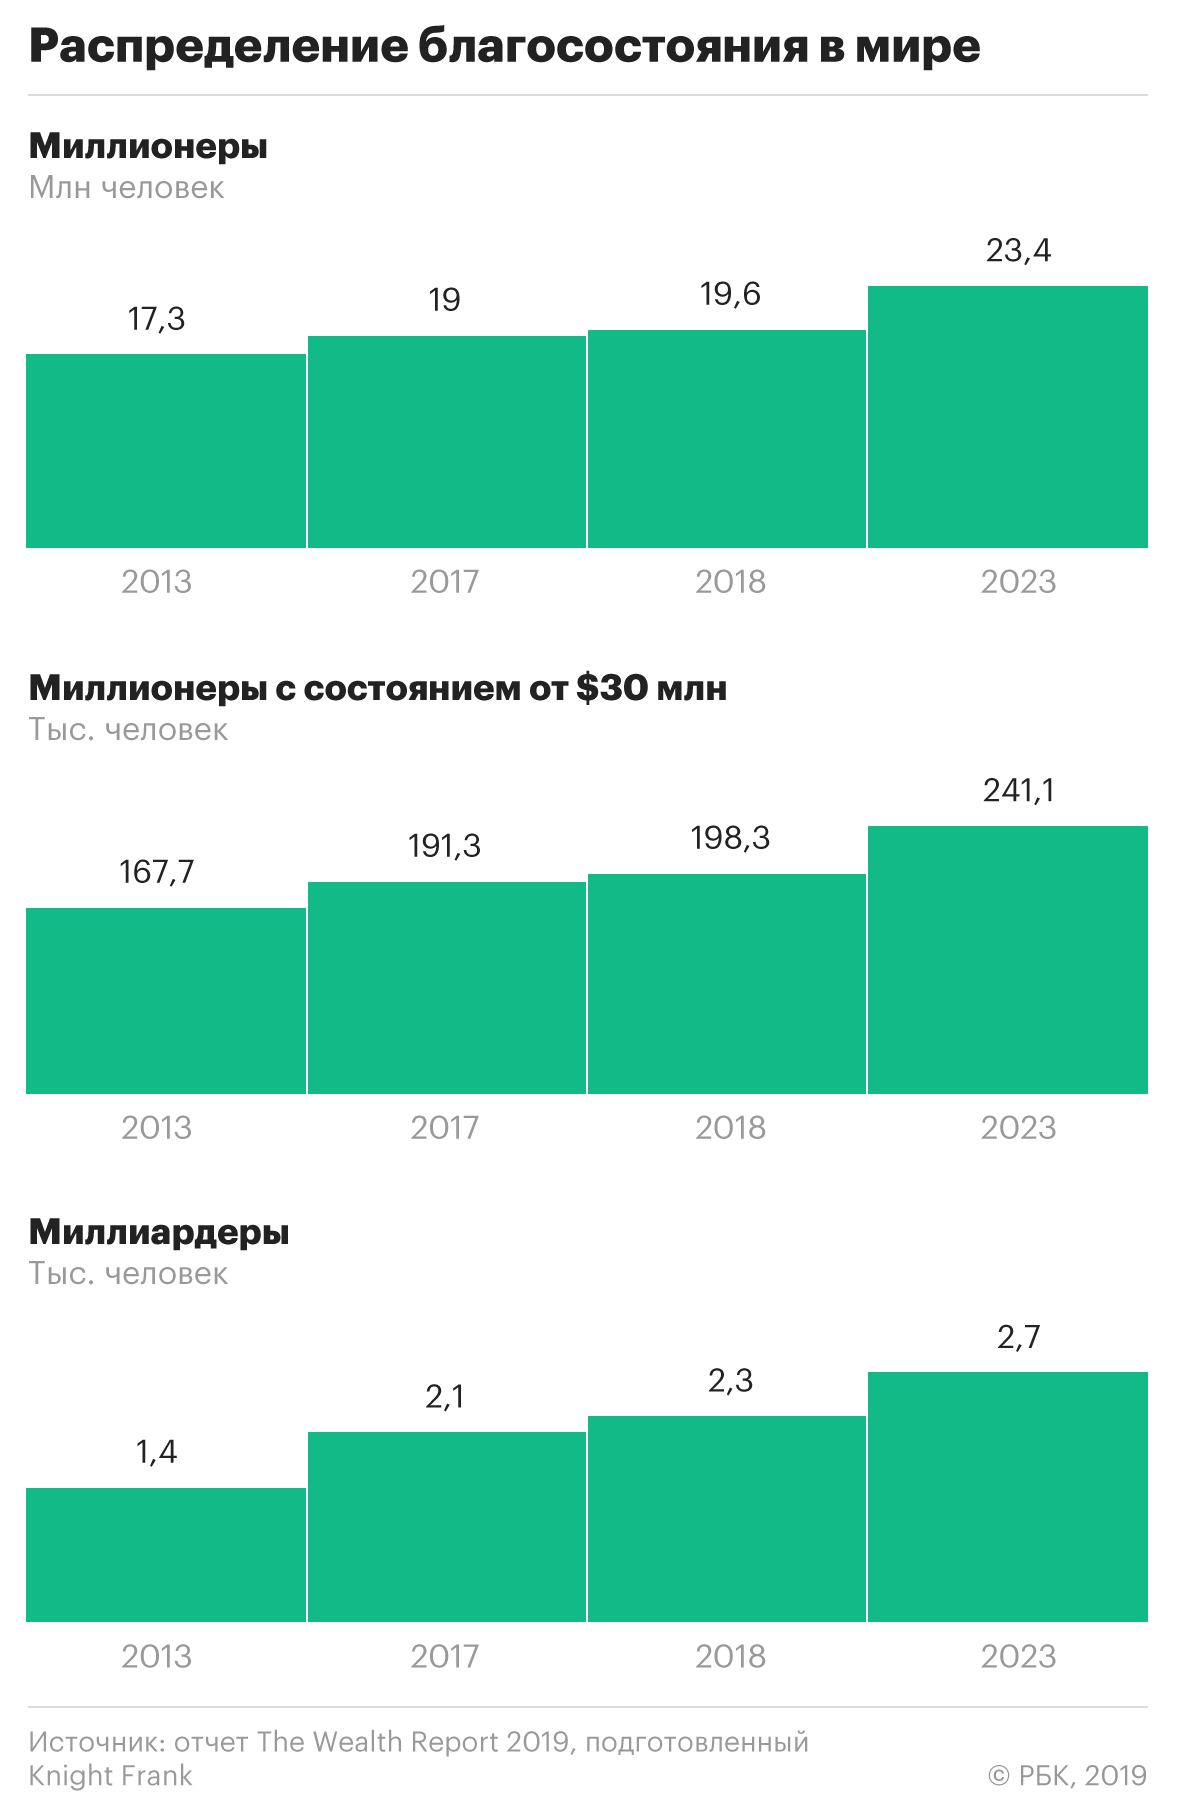 Банкиры предсказали рост капиталов мультимиллионеров России в 2019 году